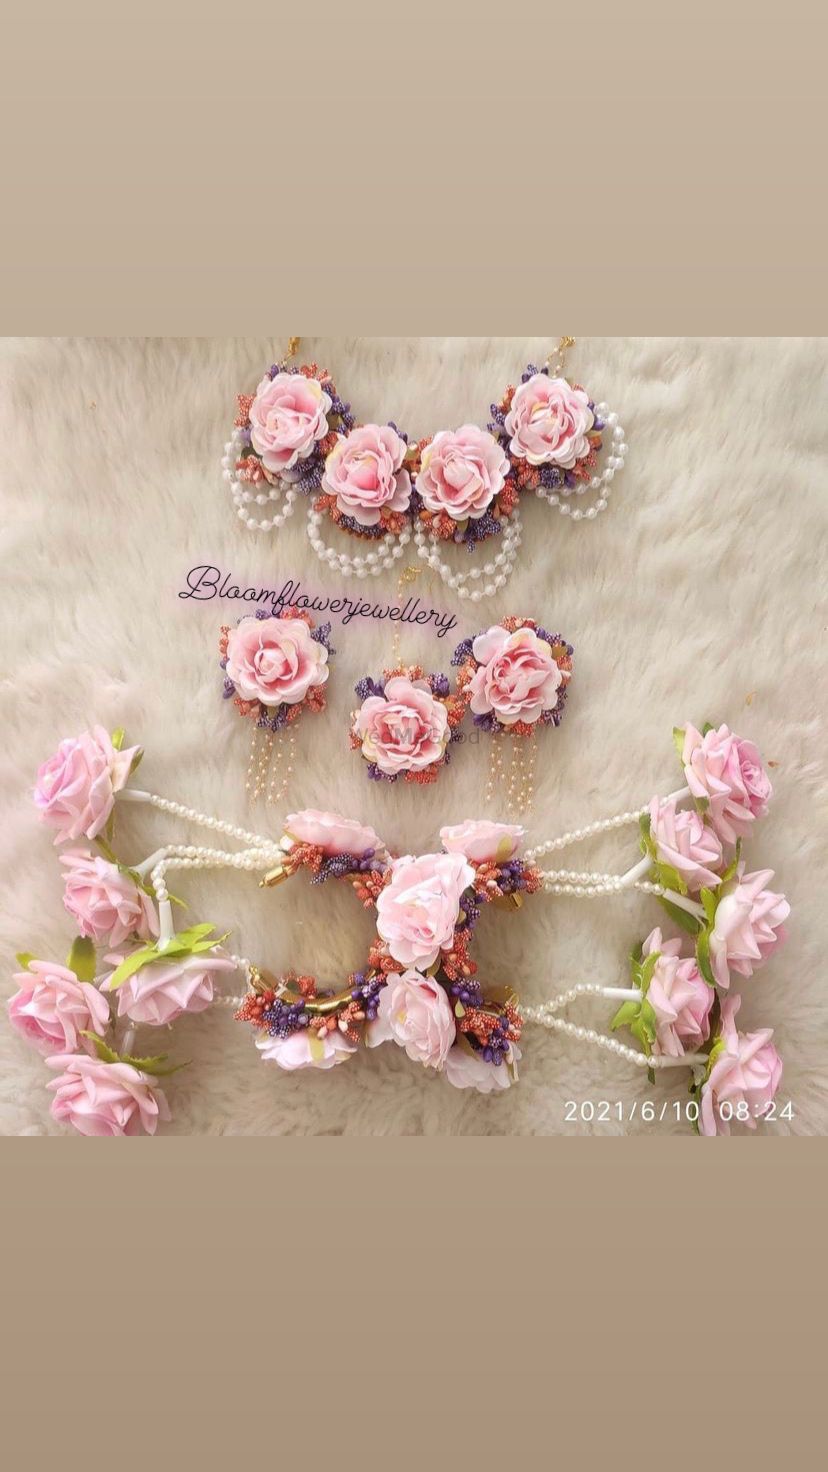 Photo By Bloom Flower Jewellery - Jewellery